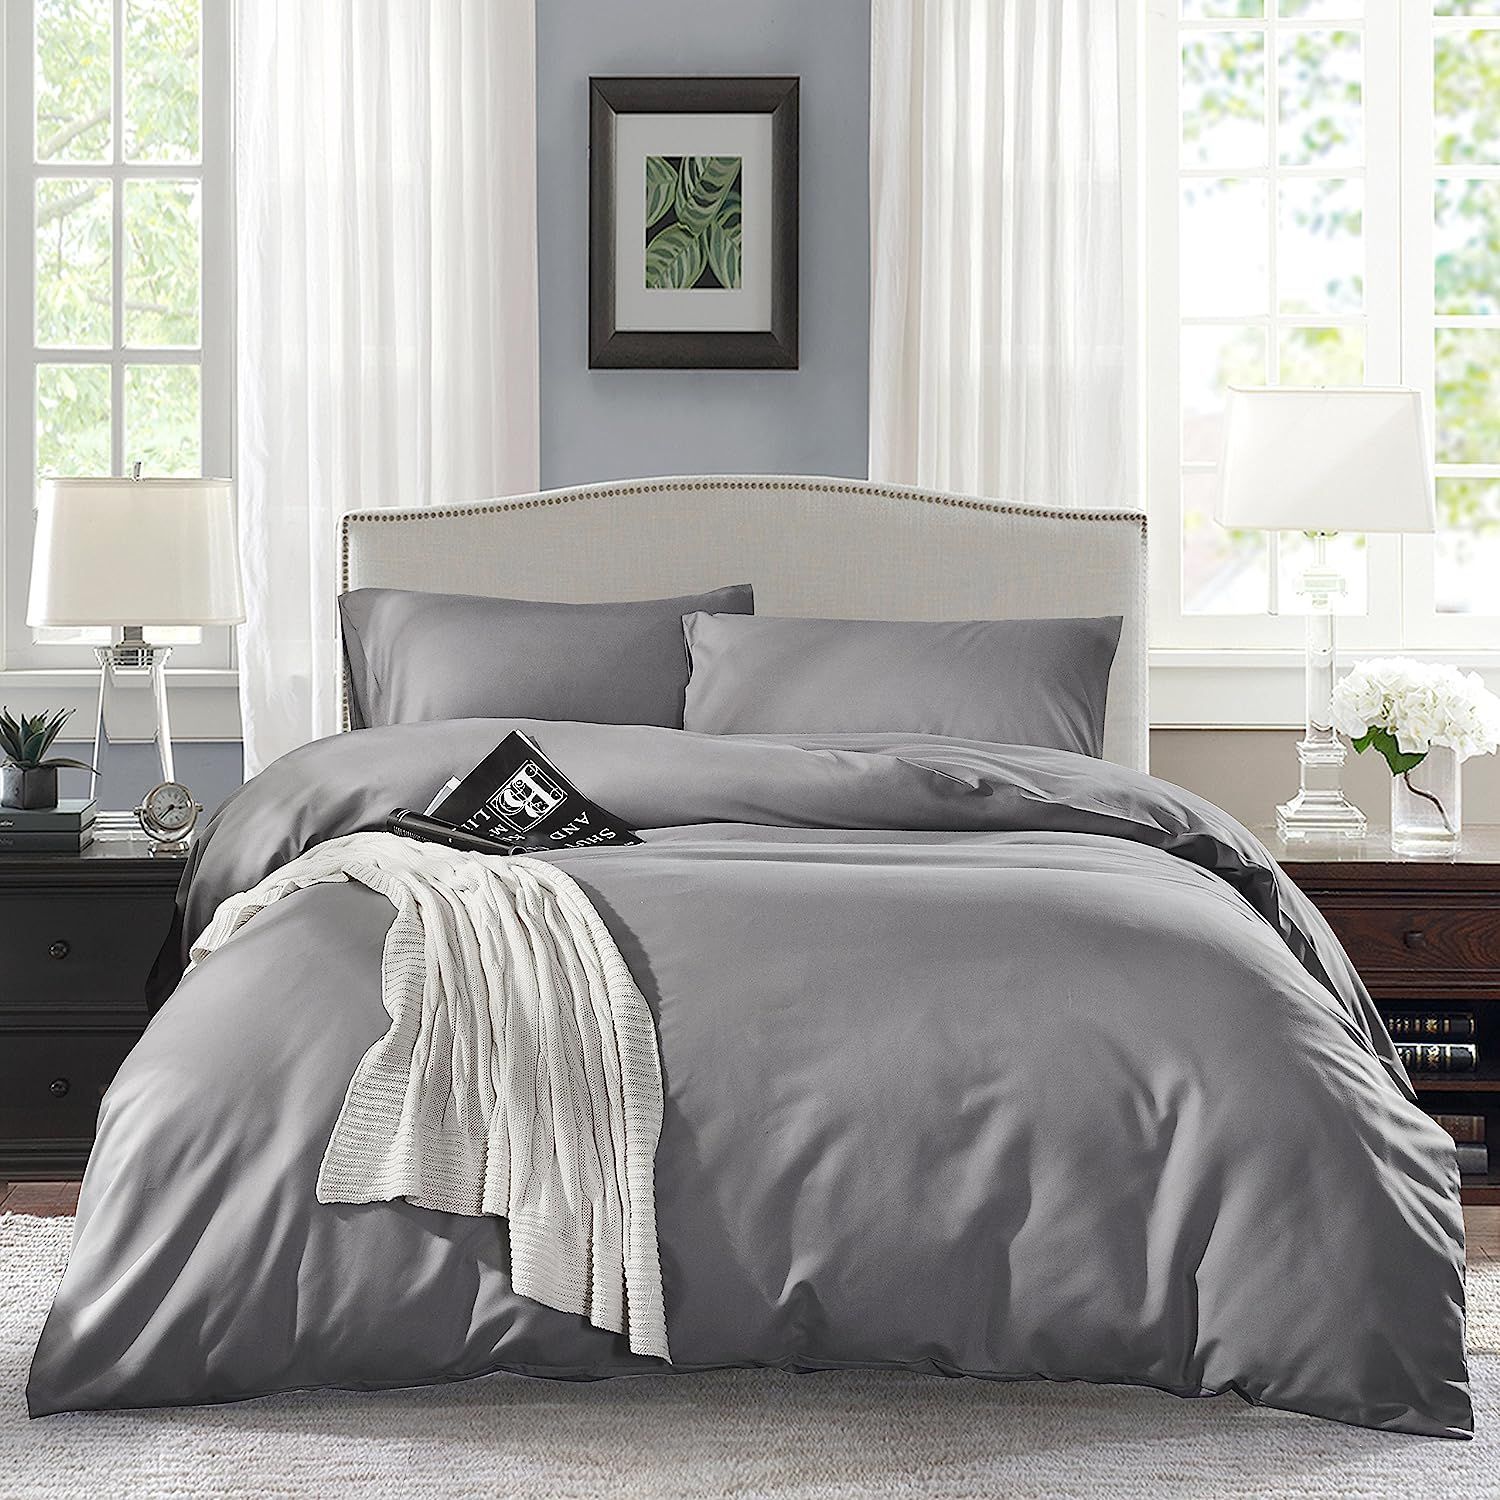 Постельное полуторка. Постельное белье Mency Luxury Bed Sheet Set. Постельное белье серое однотонное. Постельное белье цвет серый. Постельное белье полуторка.